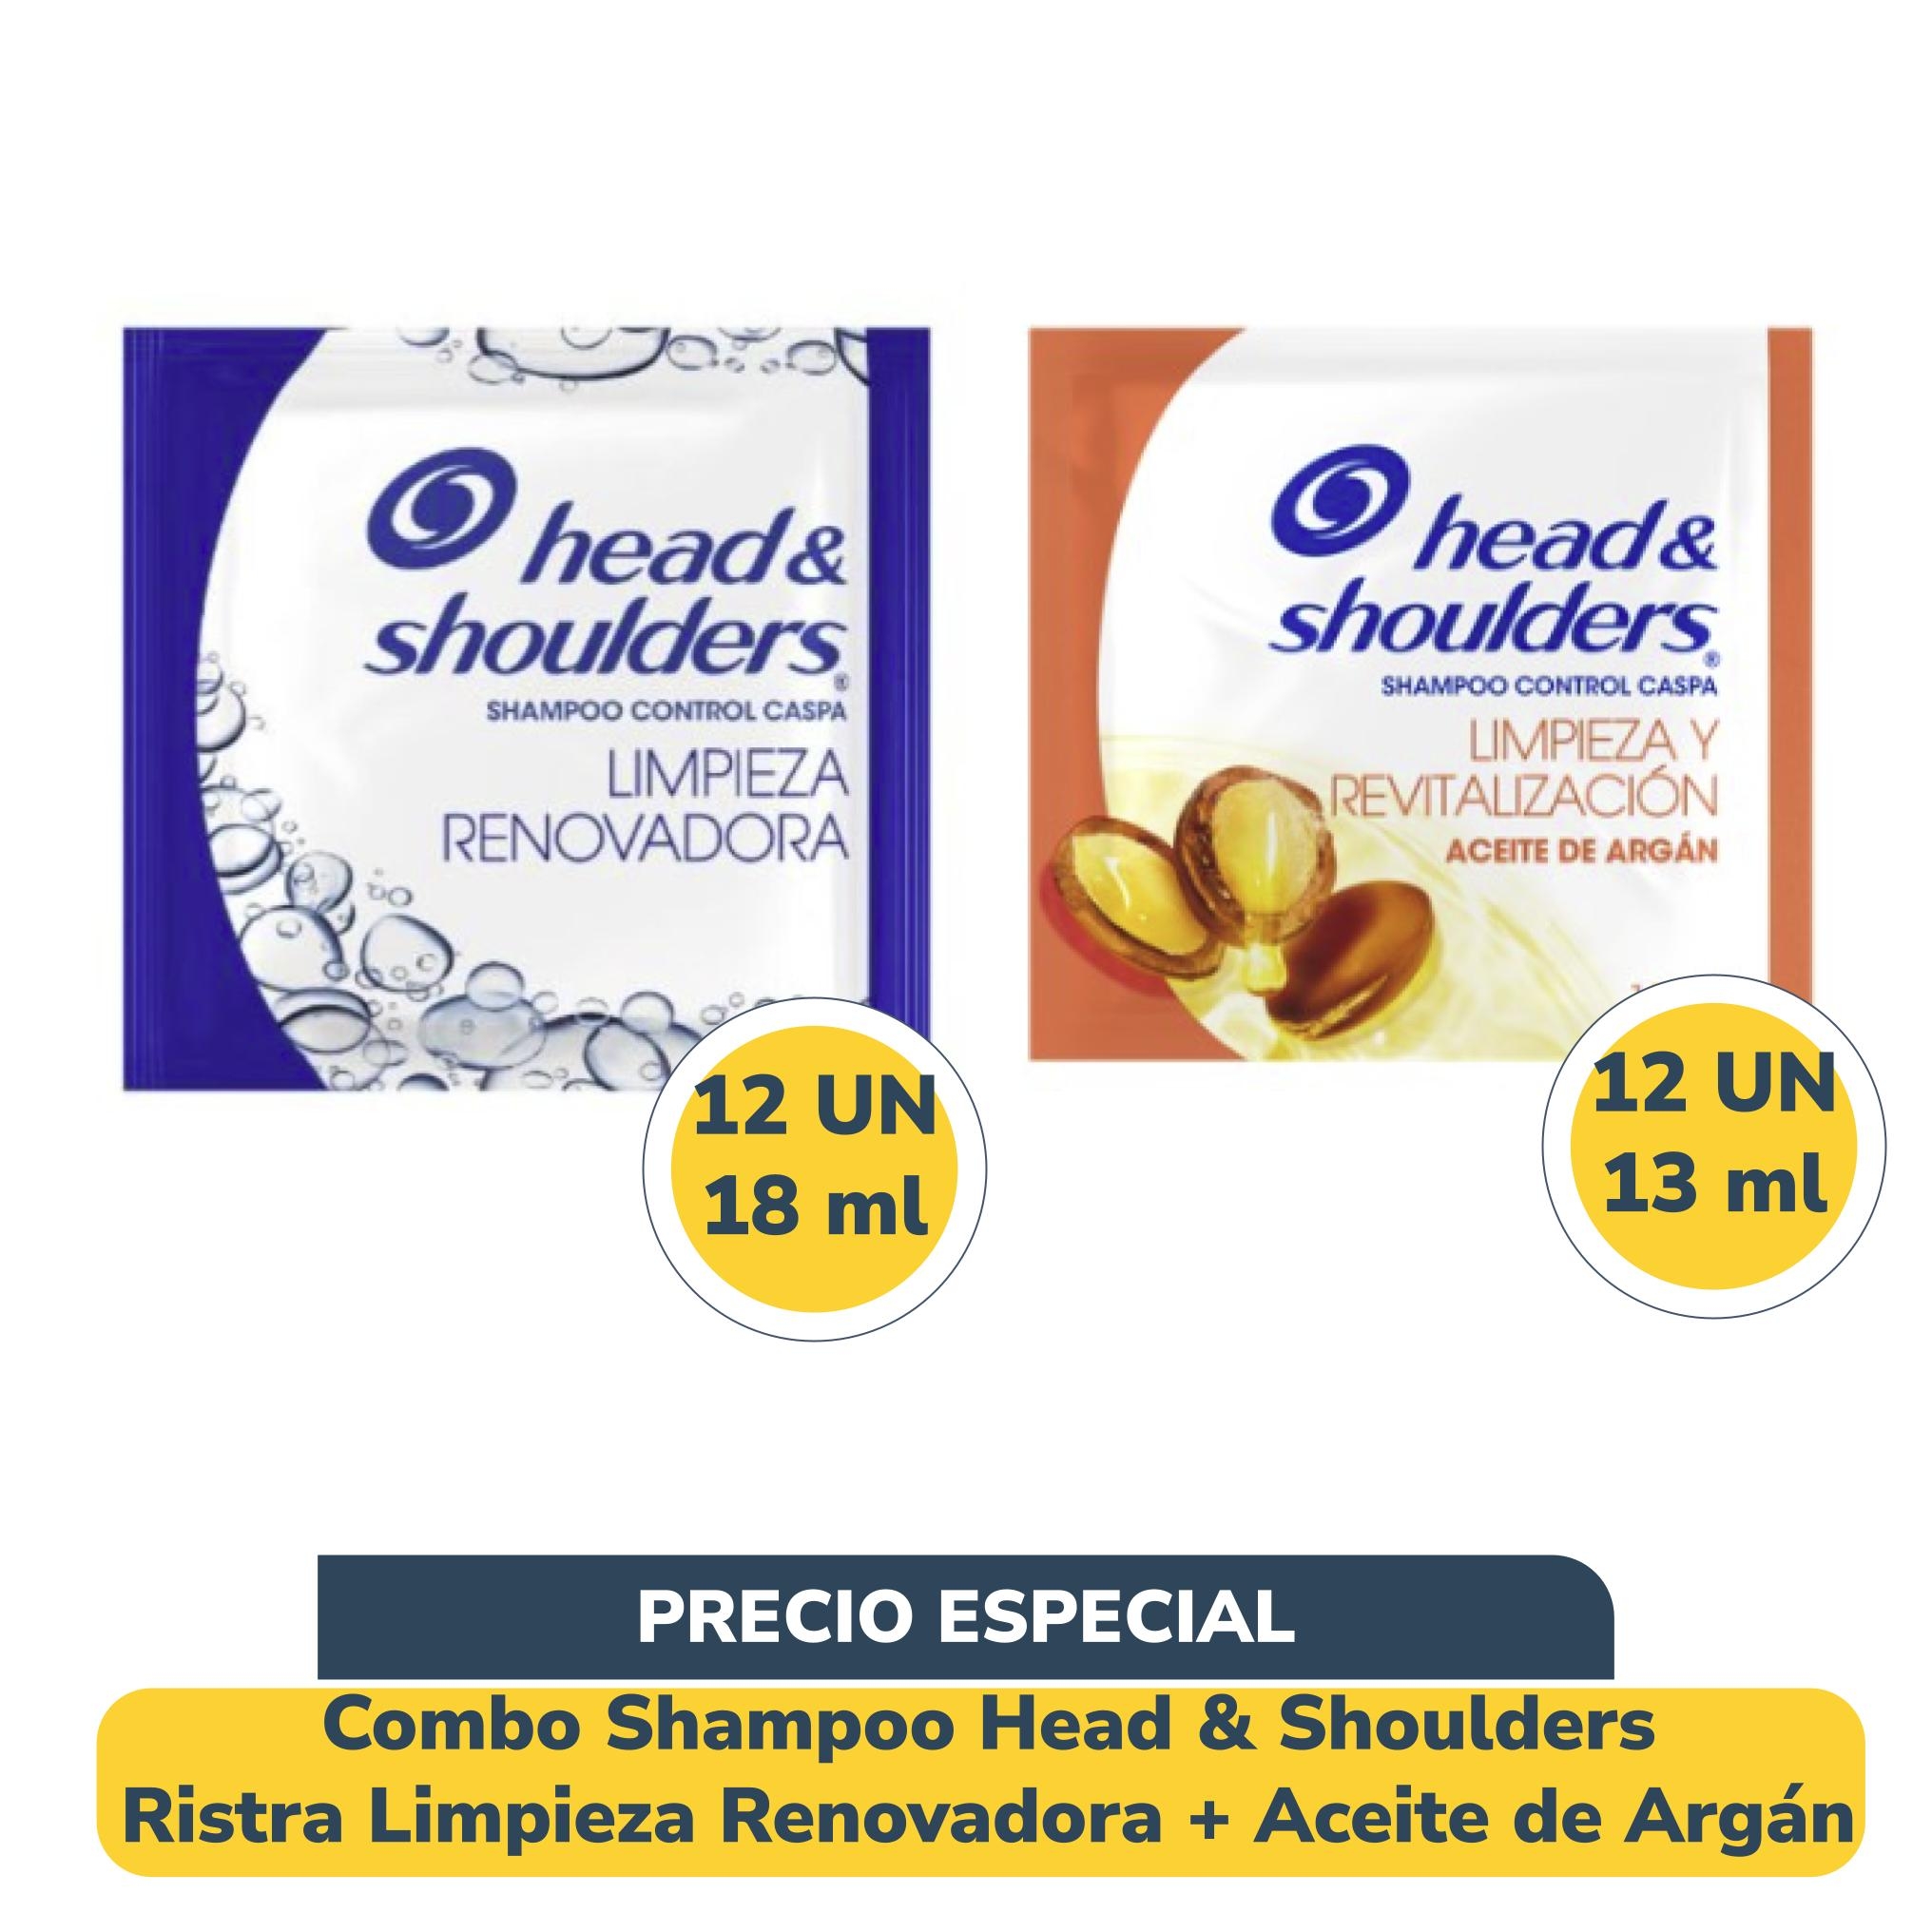 Combo Shampoo Head & Shoulders Ristra Limpieza Renovadora + Aceite de Argán